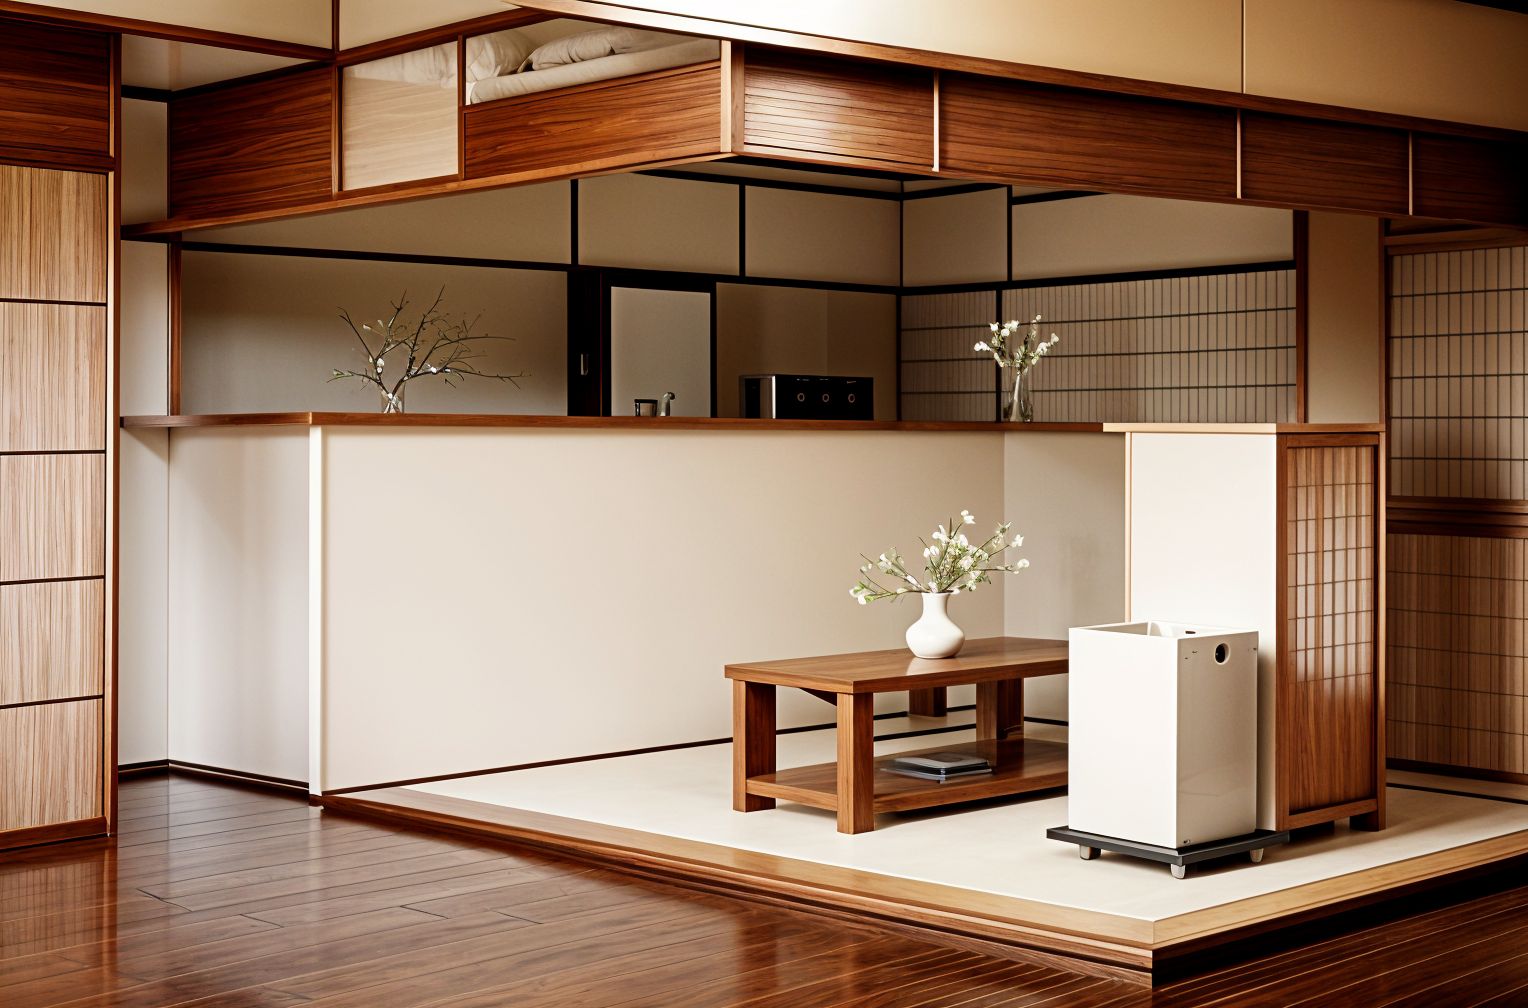 Japanese Design Reception Area